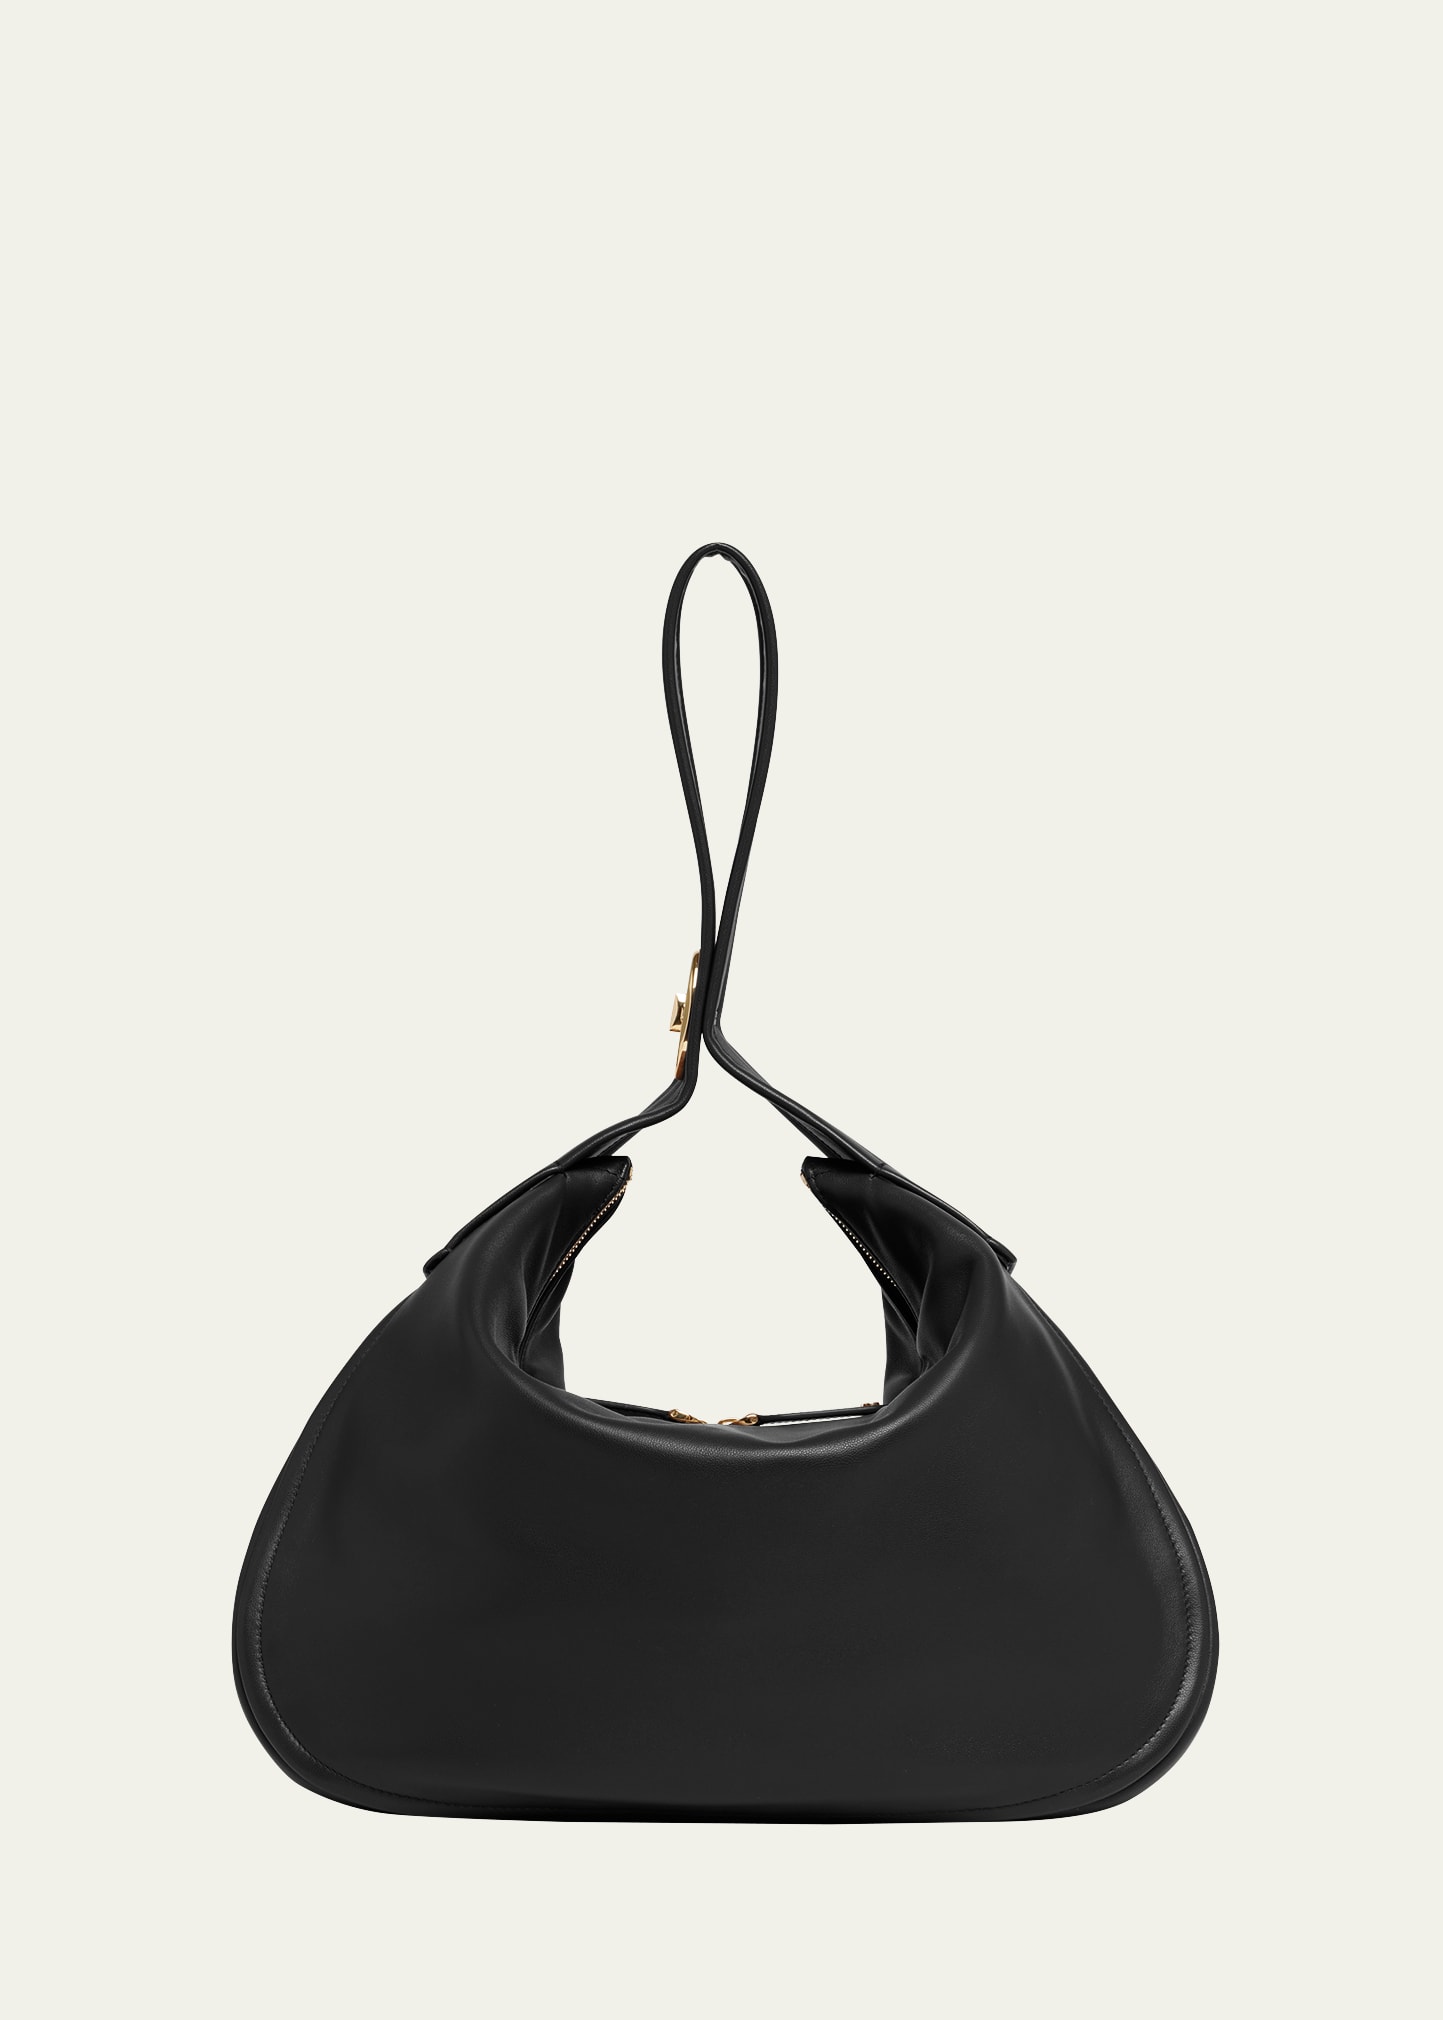 Valentino Garavani Large Hobo Leather Bag In Black